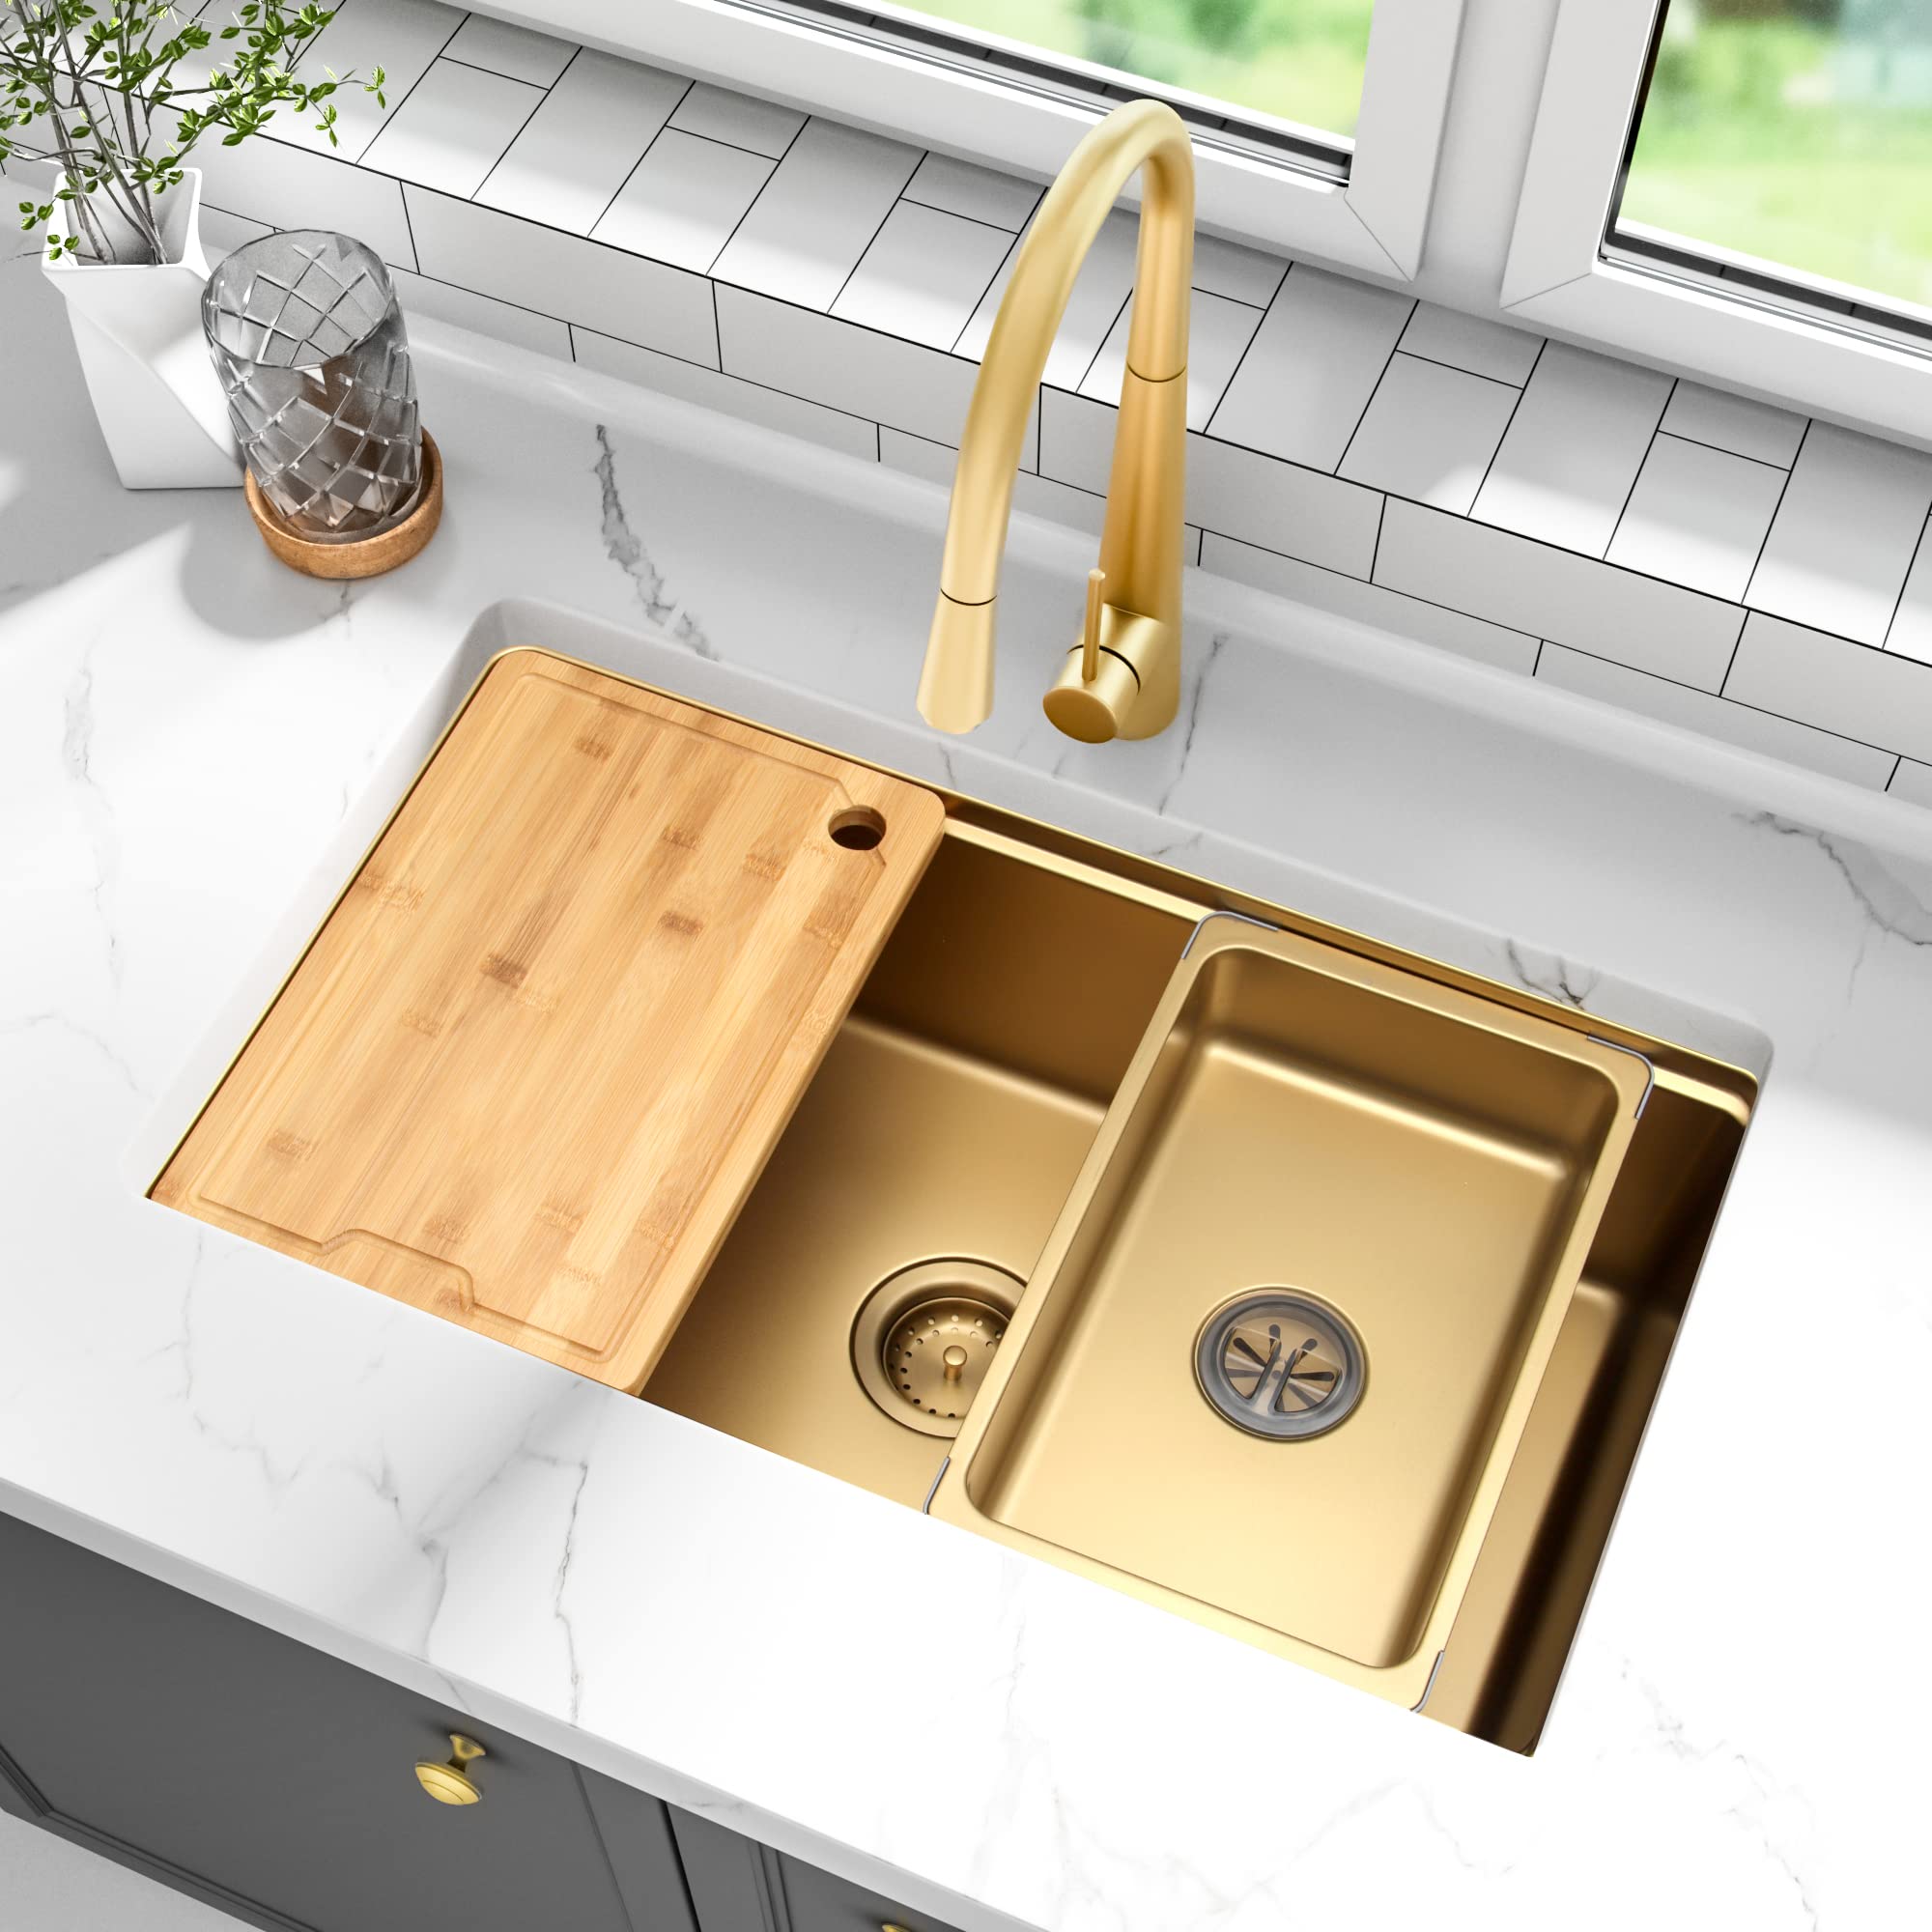 Aquacubic cupc luxo pvd nano ouro 304 aço inoxidável tigela única undermount pia de cozinha artesanal com borda